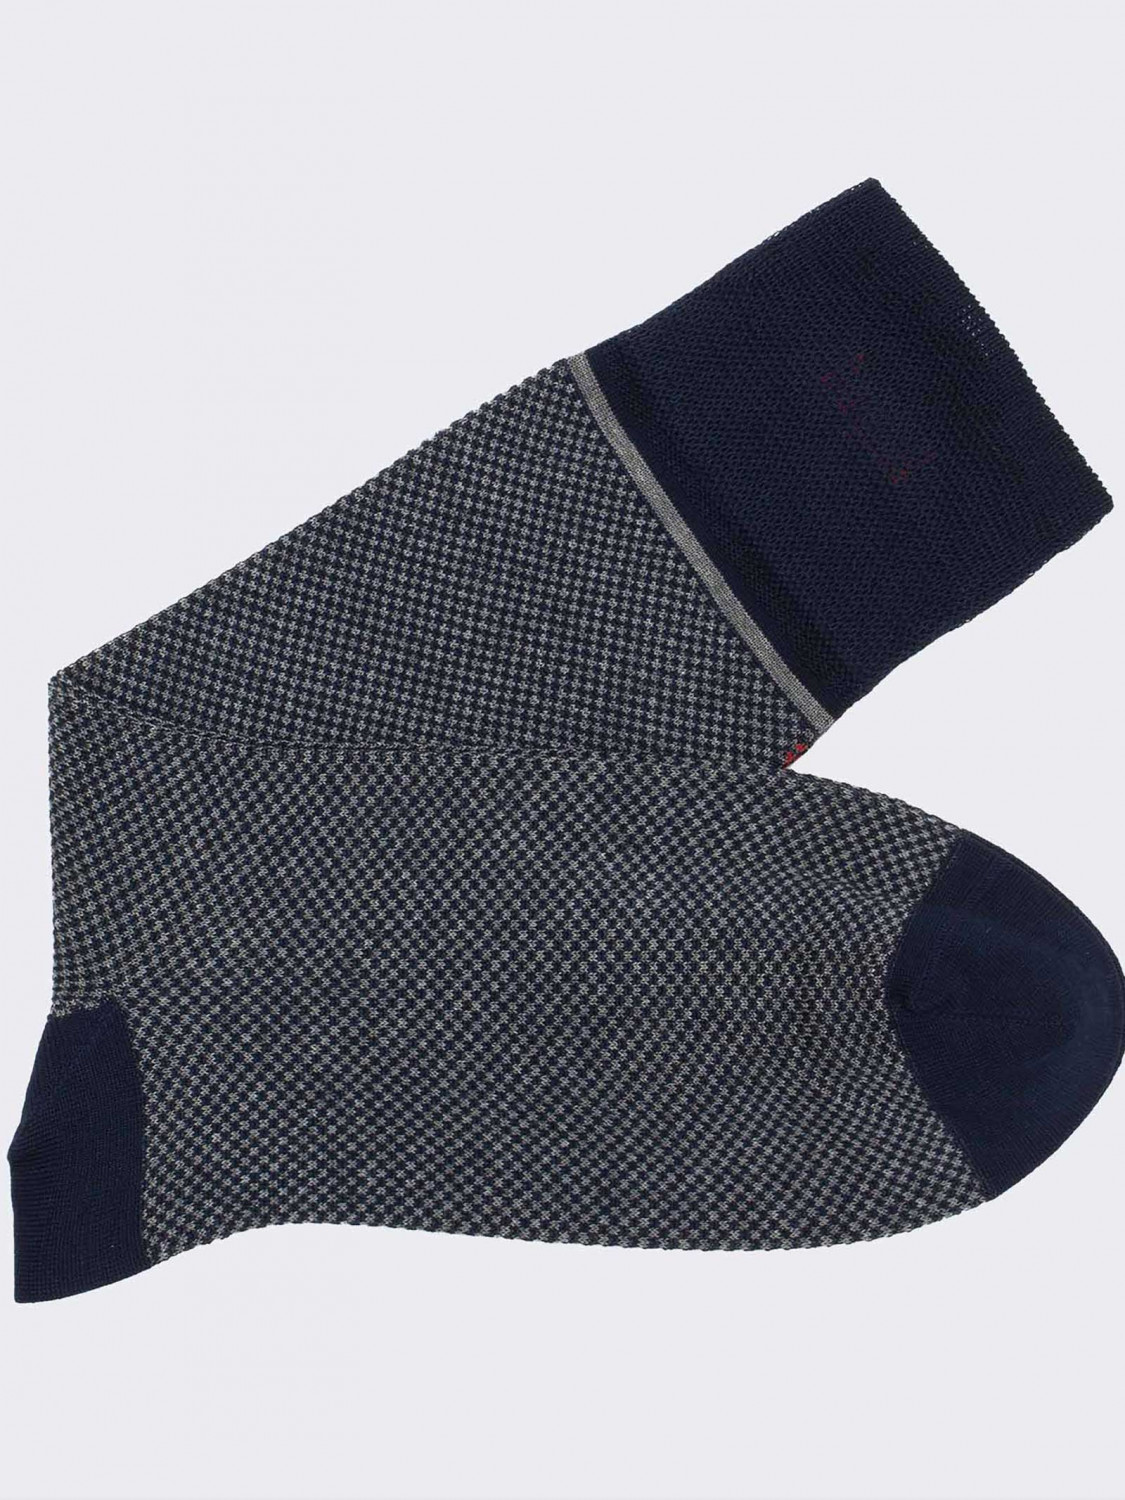 Net Patterned Men's Crew Socks in Cotton